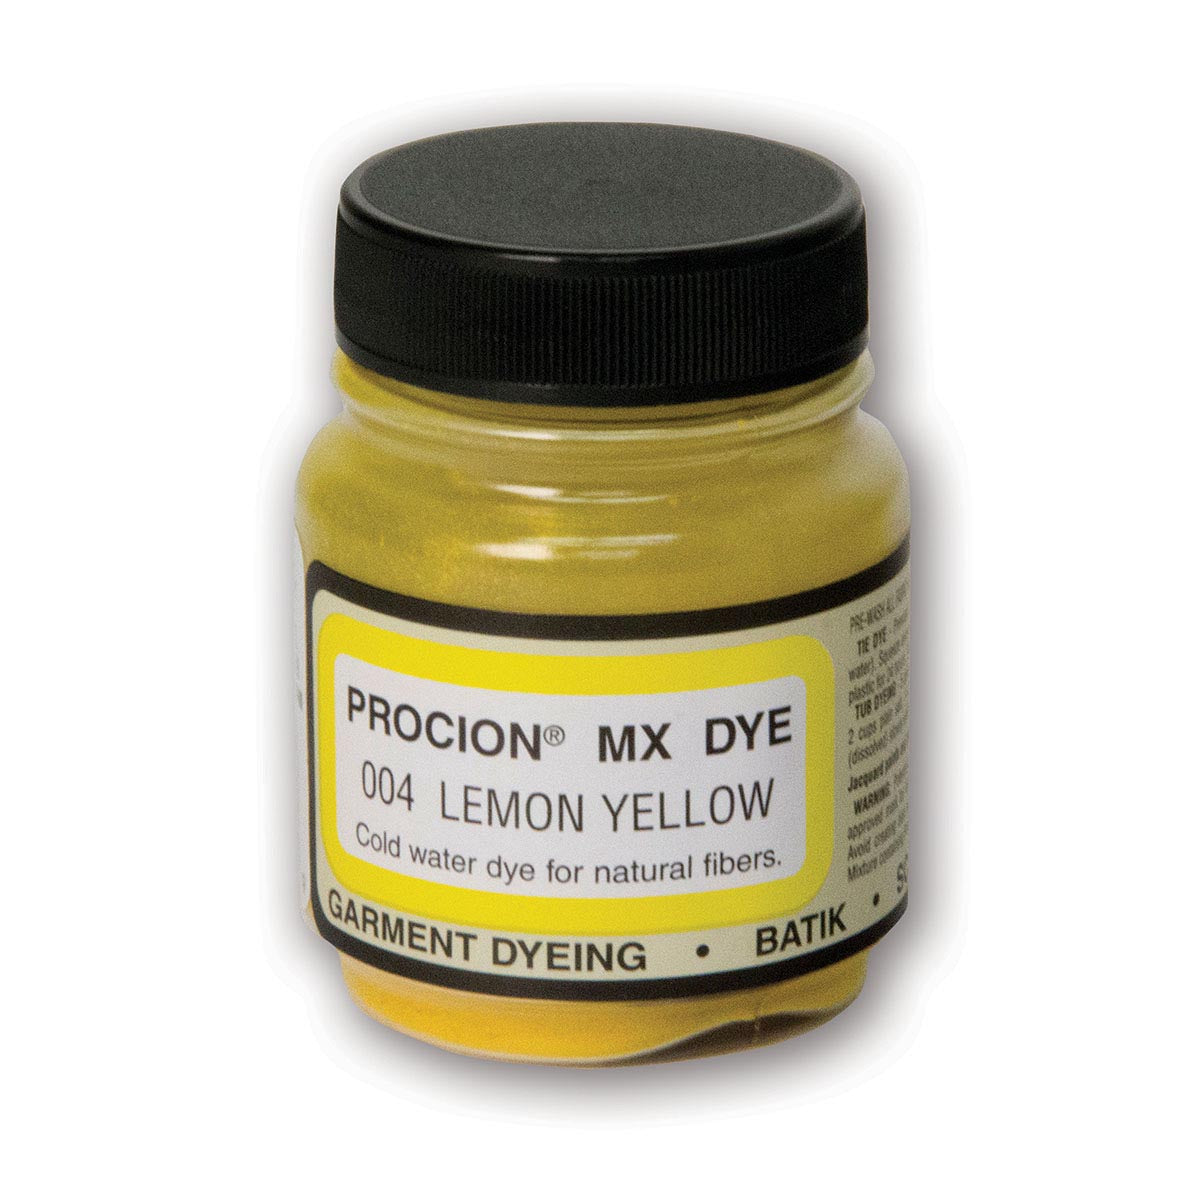 Jacquard - Procion MX Dye - Fabric Textile - Lemon Yellow 004